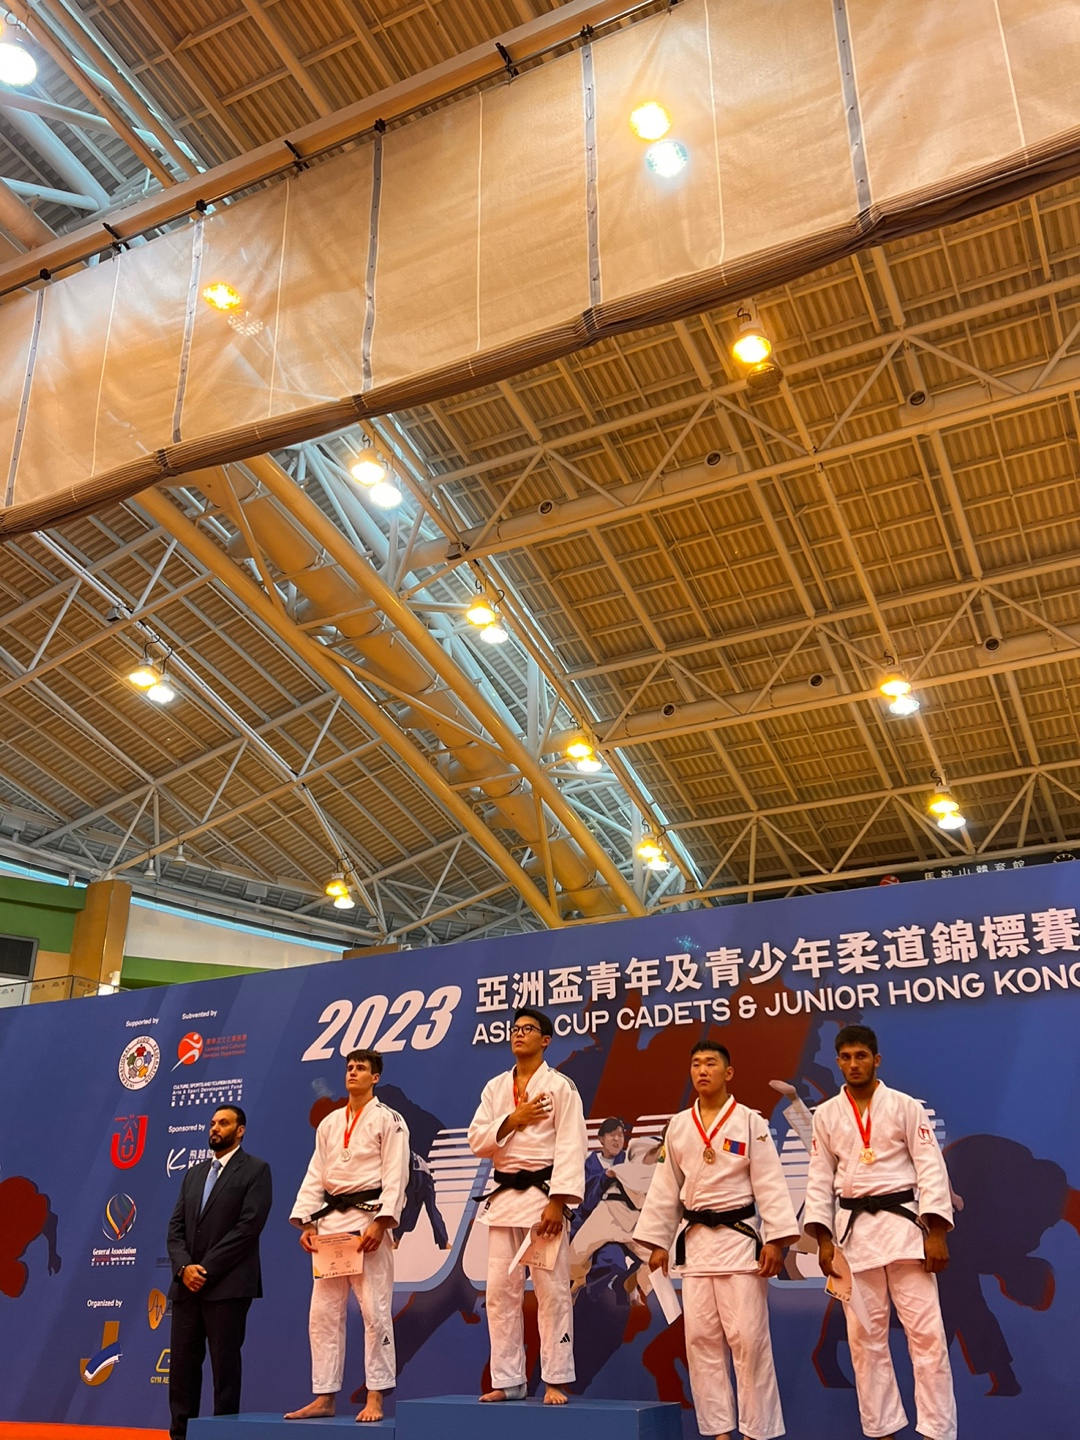 2023 아시아컵 홍콩 유청소년 국제대회  